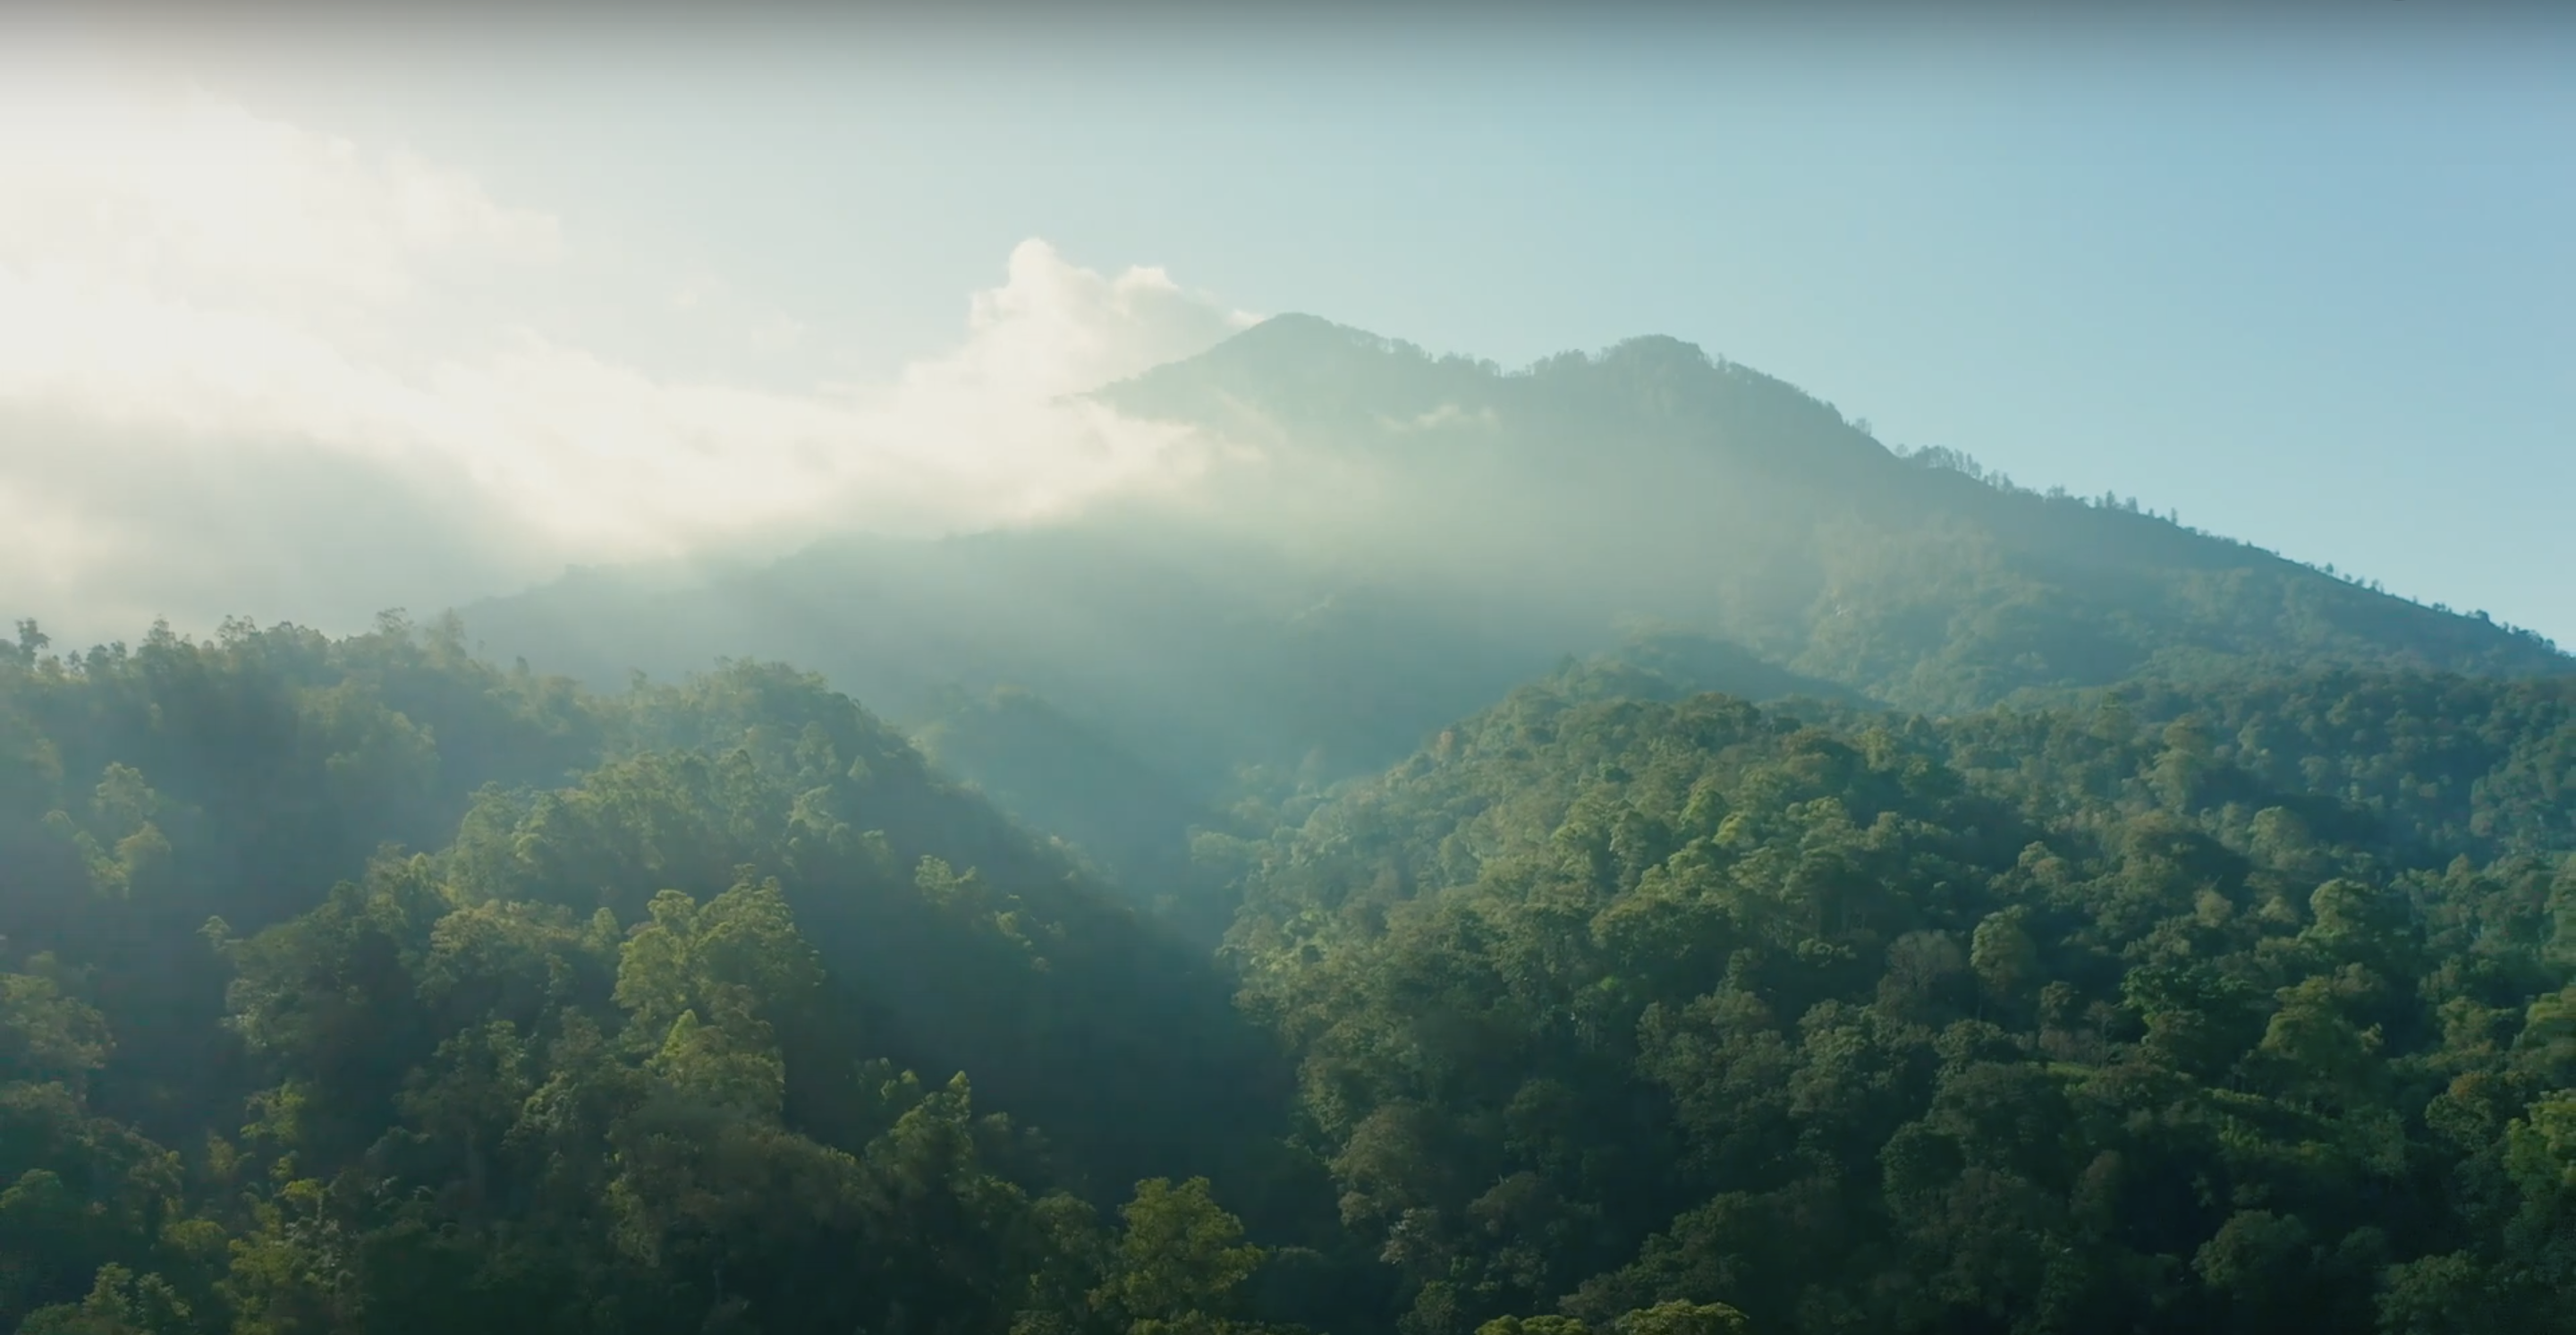 منظر جبلي وبركان في إندونيسيا مغطى بالغابات الخضراء، مع سماء زرقاء مشمسة.